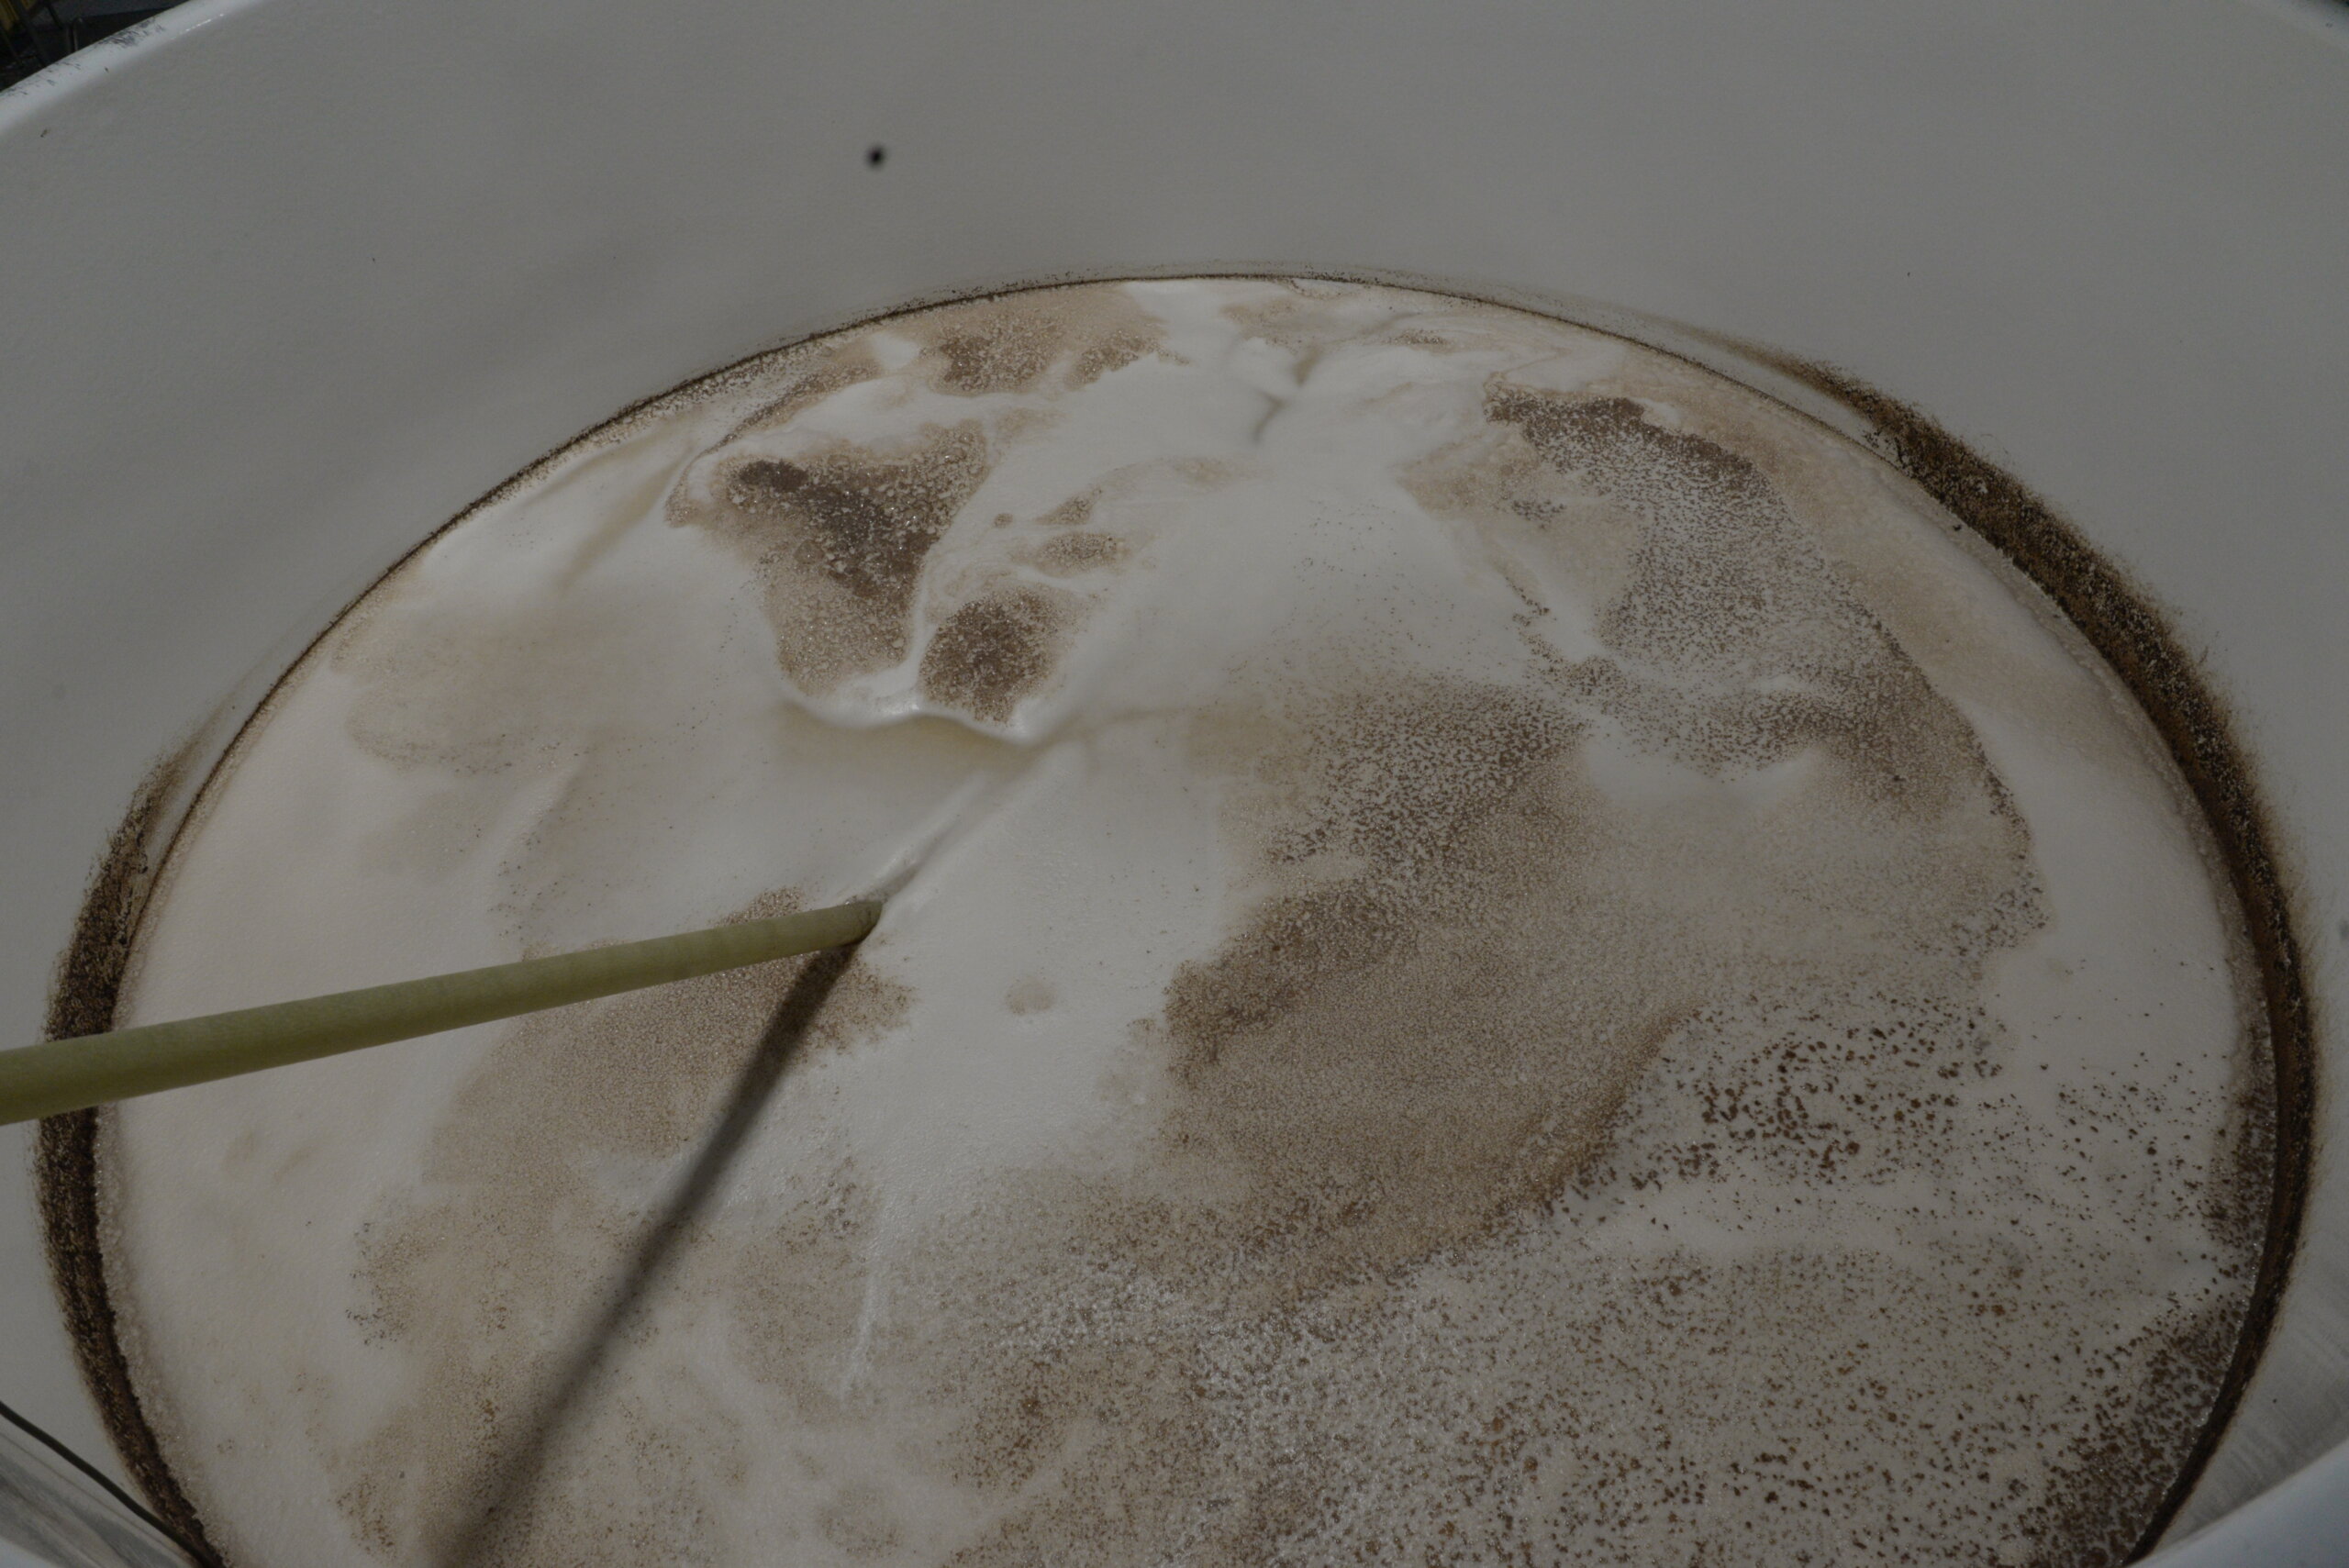 発酵4日目のもろみです。乳酸発酵が進むと表面の色がより濃くなります。